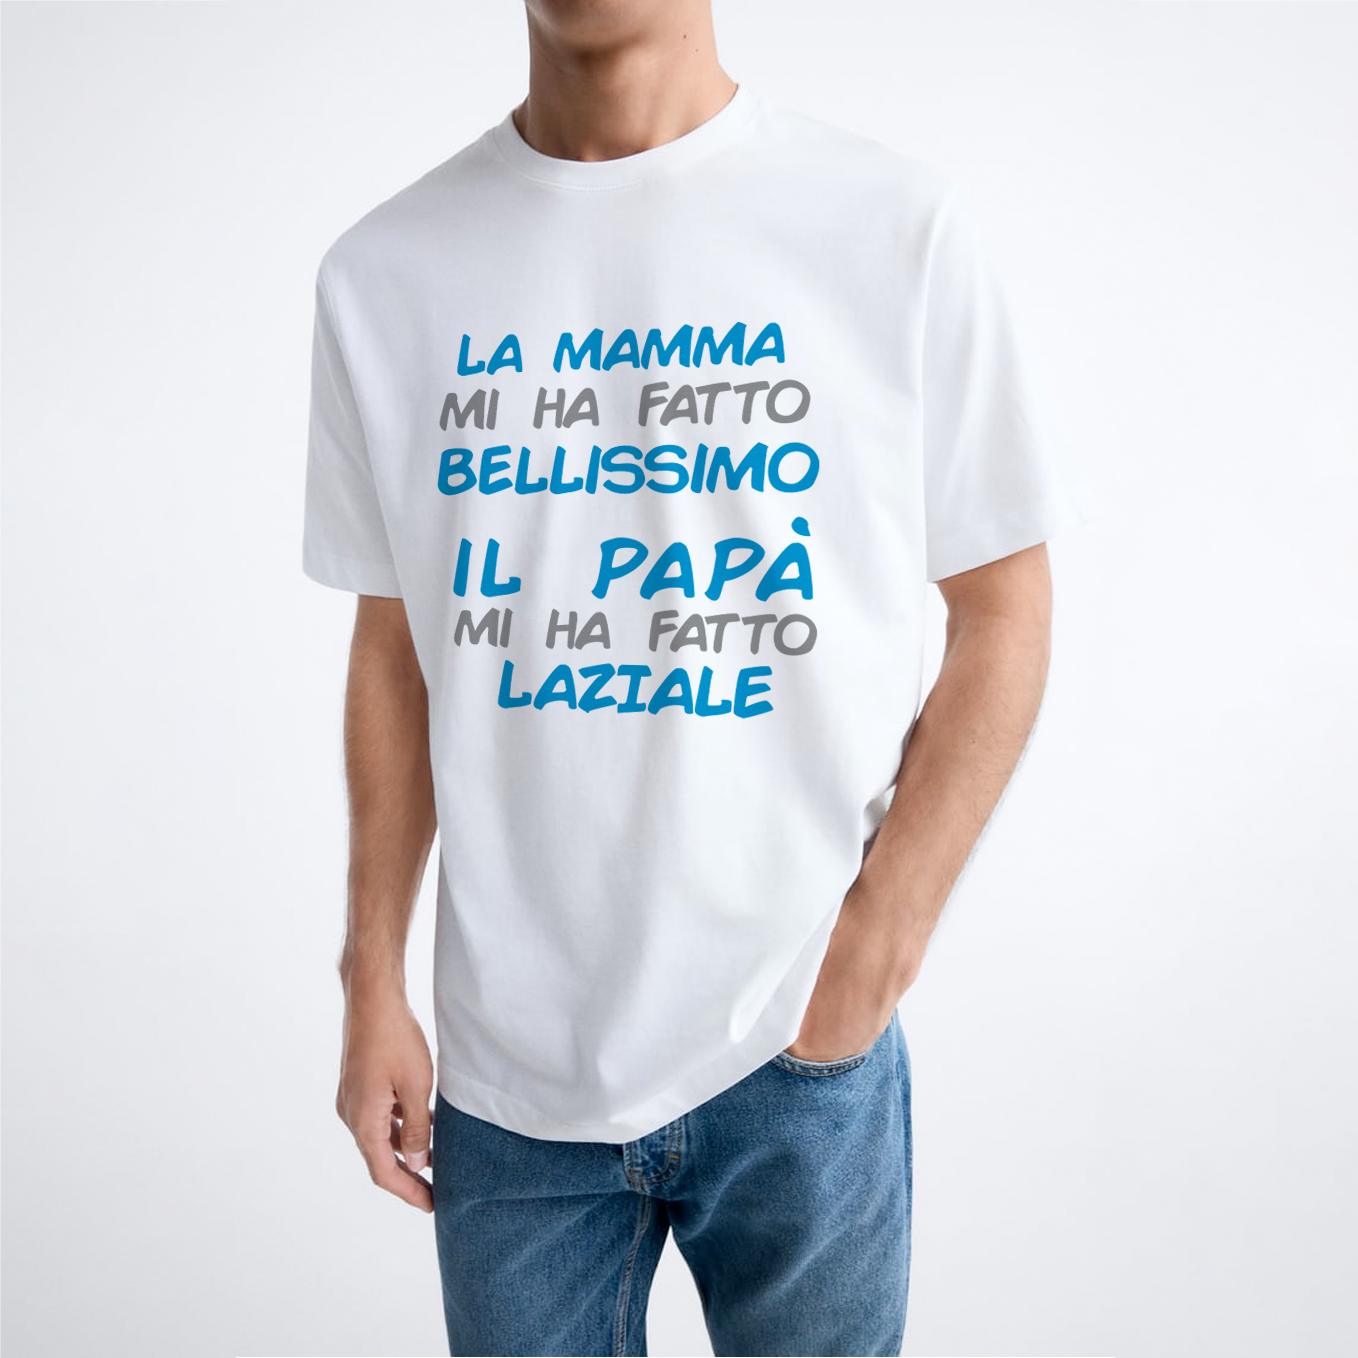 T-shirt "Il papà mi ha fatto Laziale"